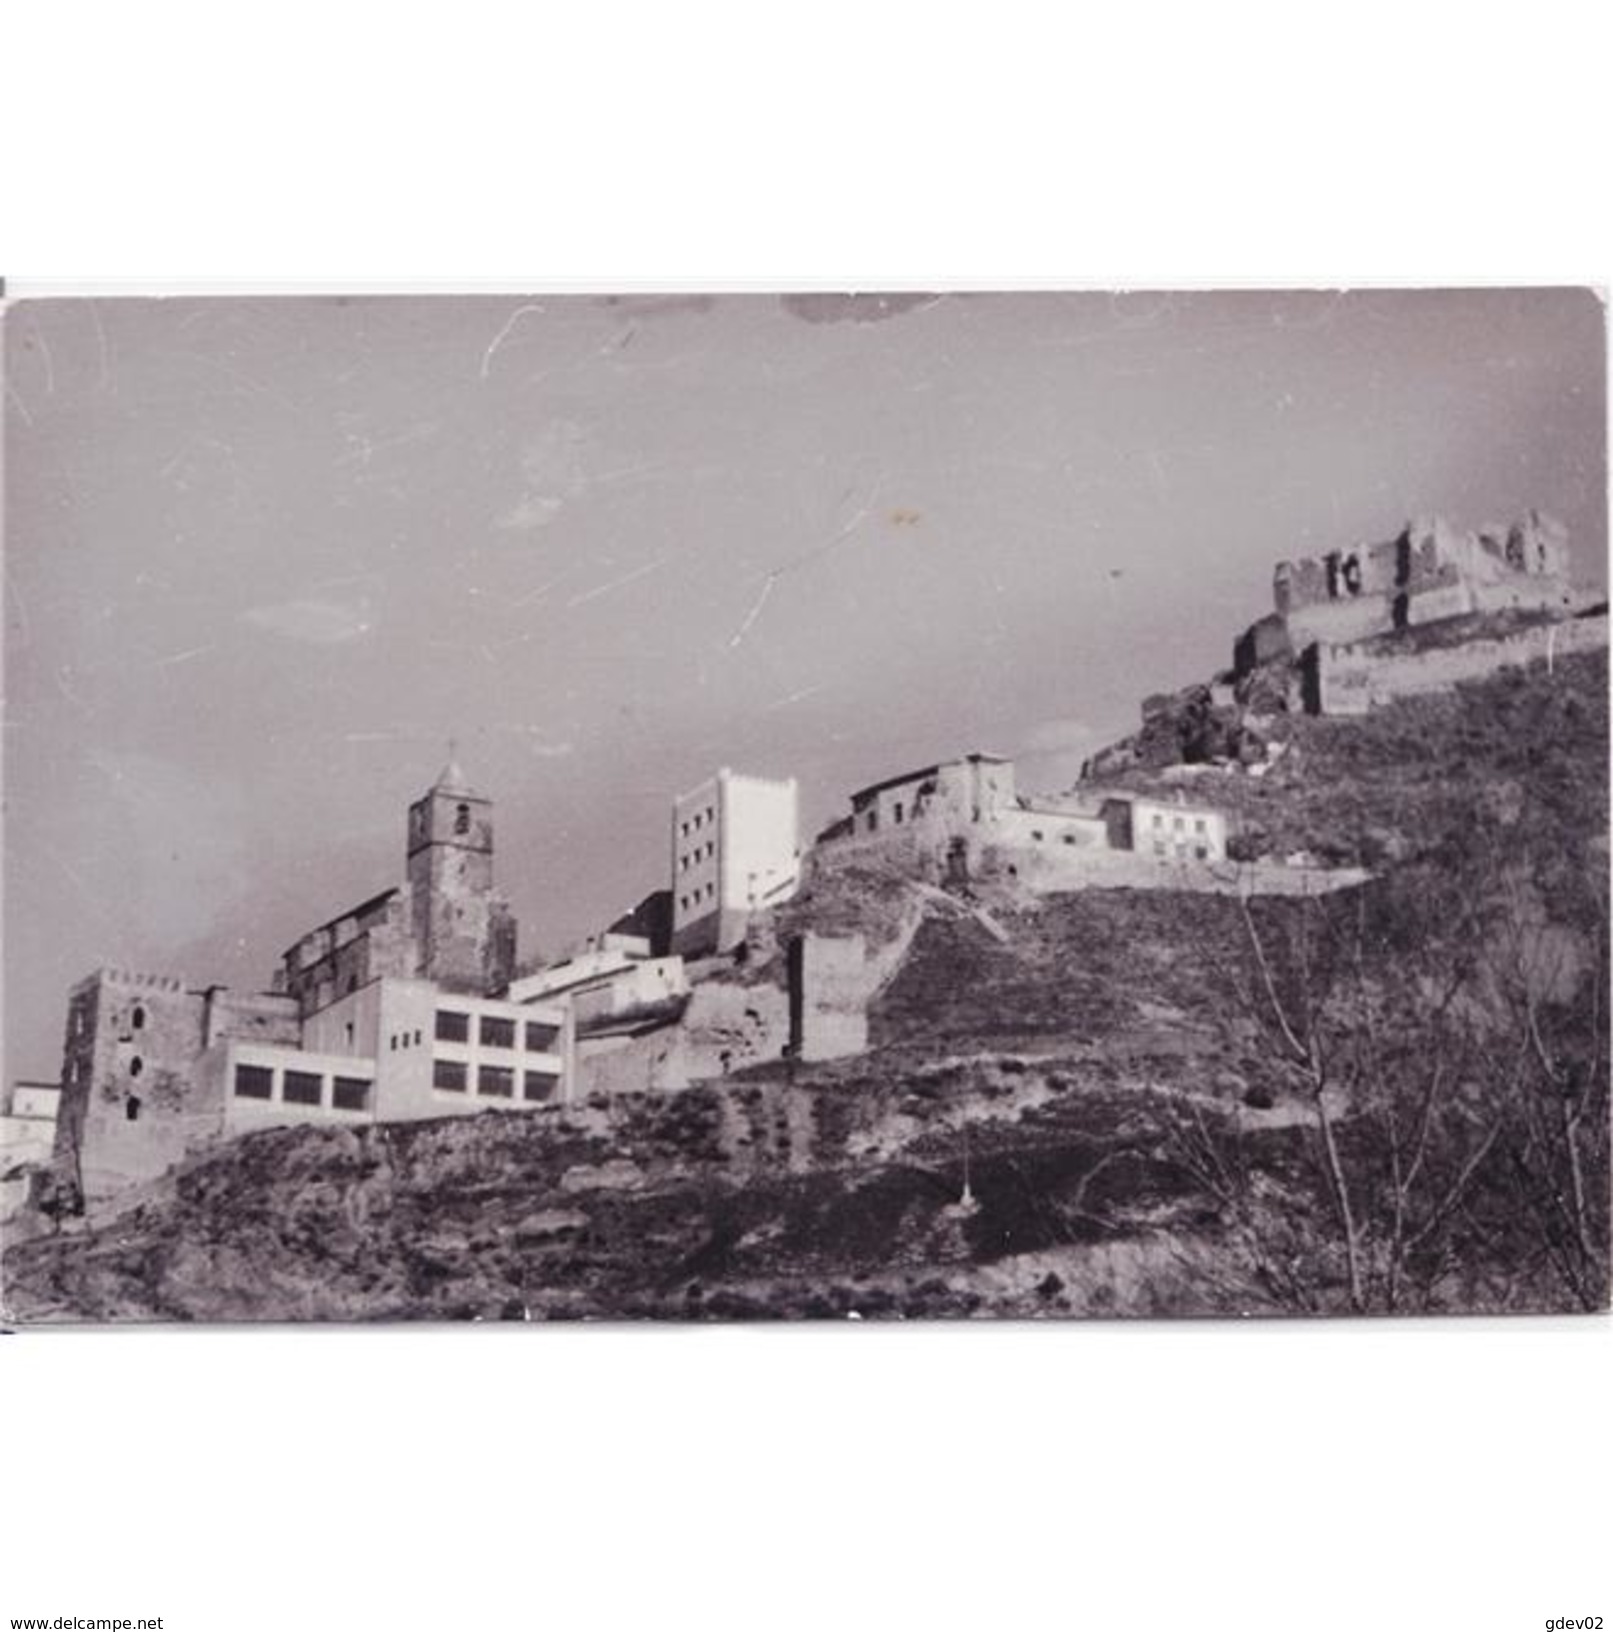 JNTP7794-LFTD5463.Tarjeta Postal De JAEN.Edificios,arboles,iglesia,castillo En SEGURA DE LA SIERRA - Jaén